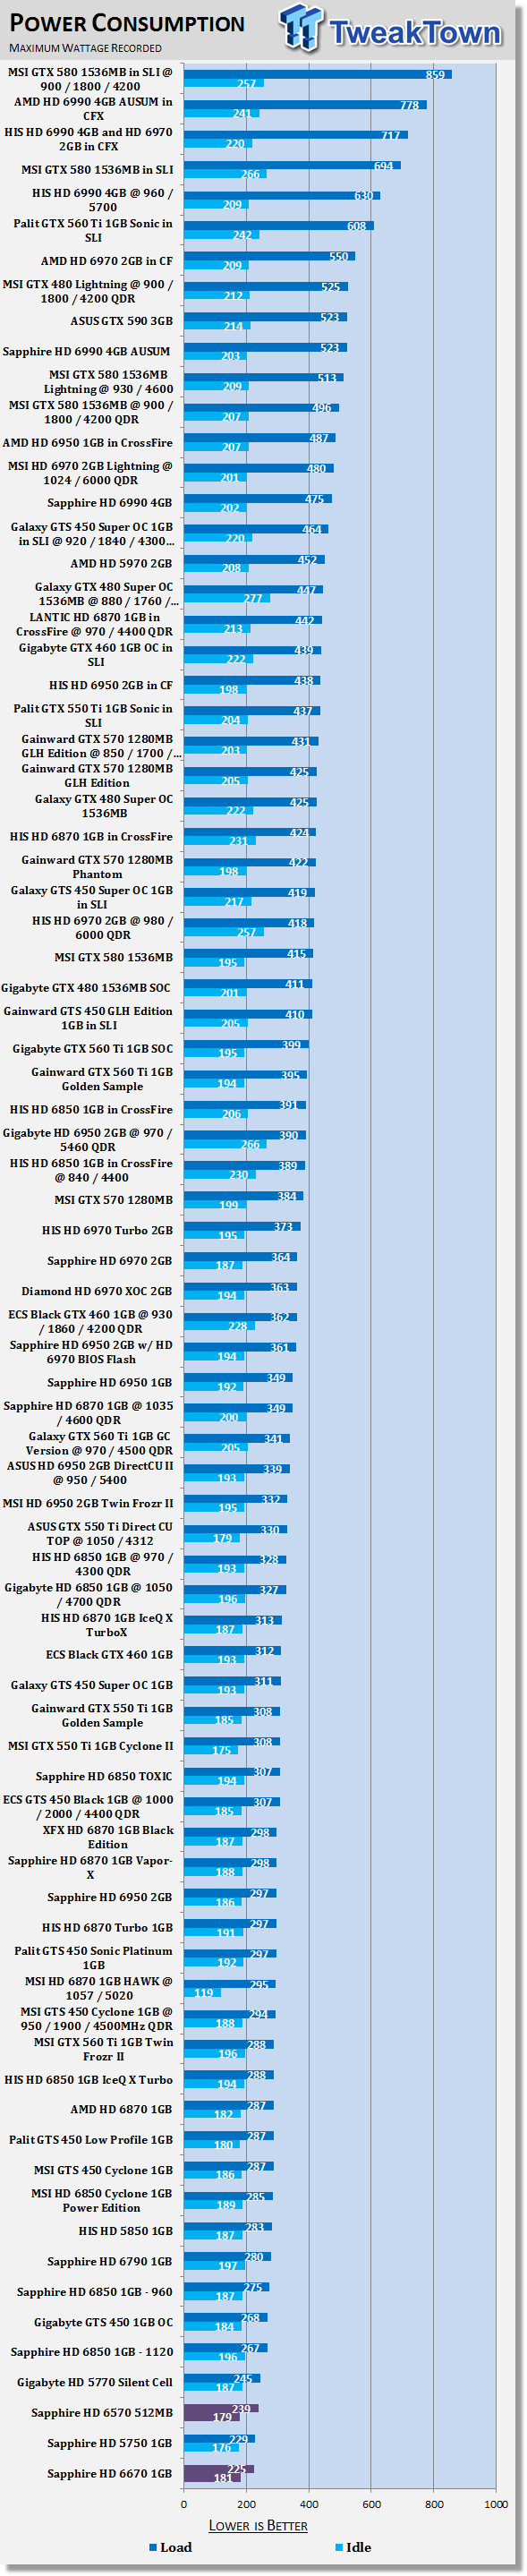 Энергопотребление Sapphire Radeon HD 6570 и HD 6670